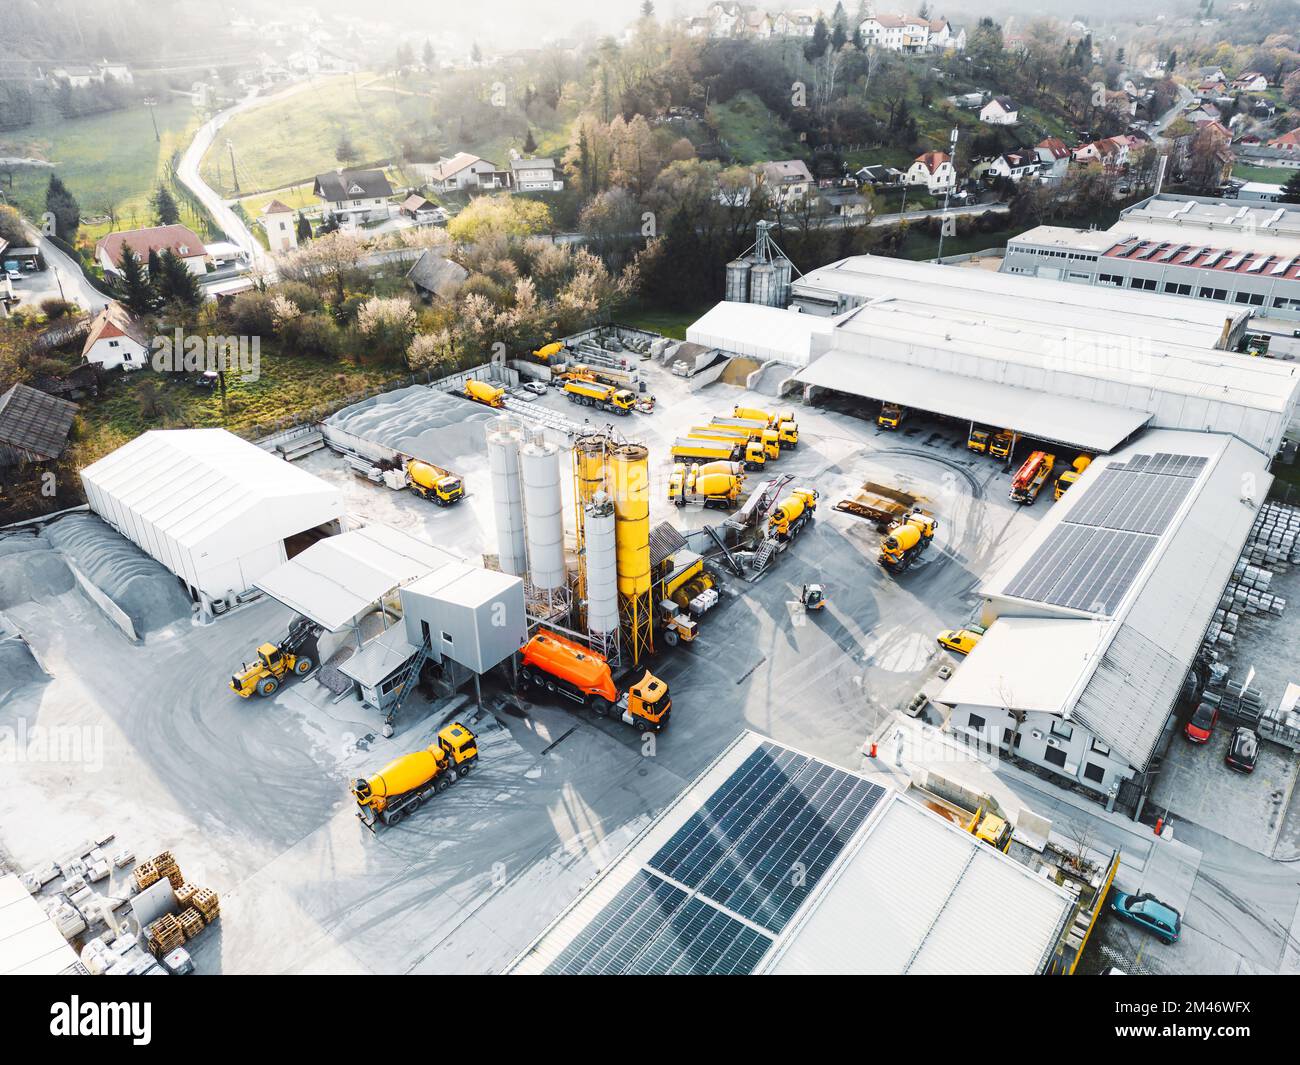 Vue aérienne de la société de construction avec beaucoup de camion jaune et de machinerie lourde garée sur le terrain Banque D'Images